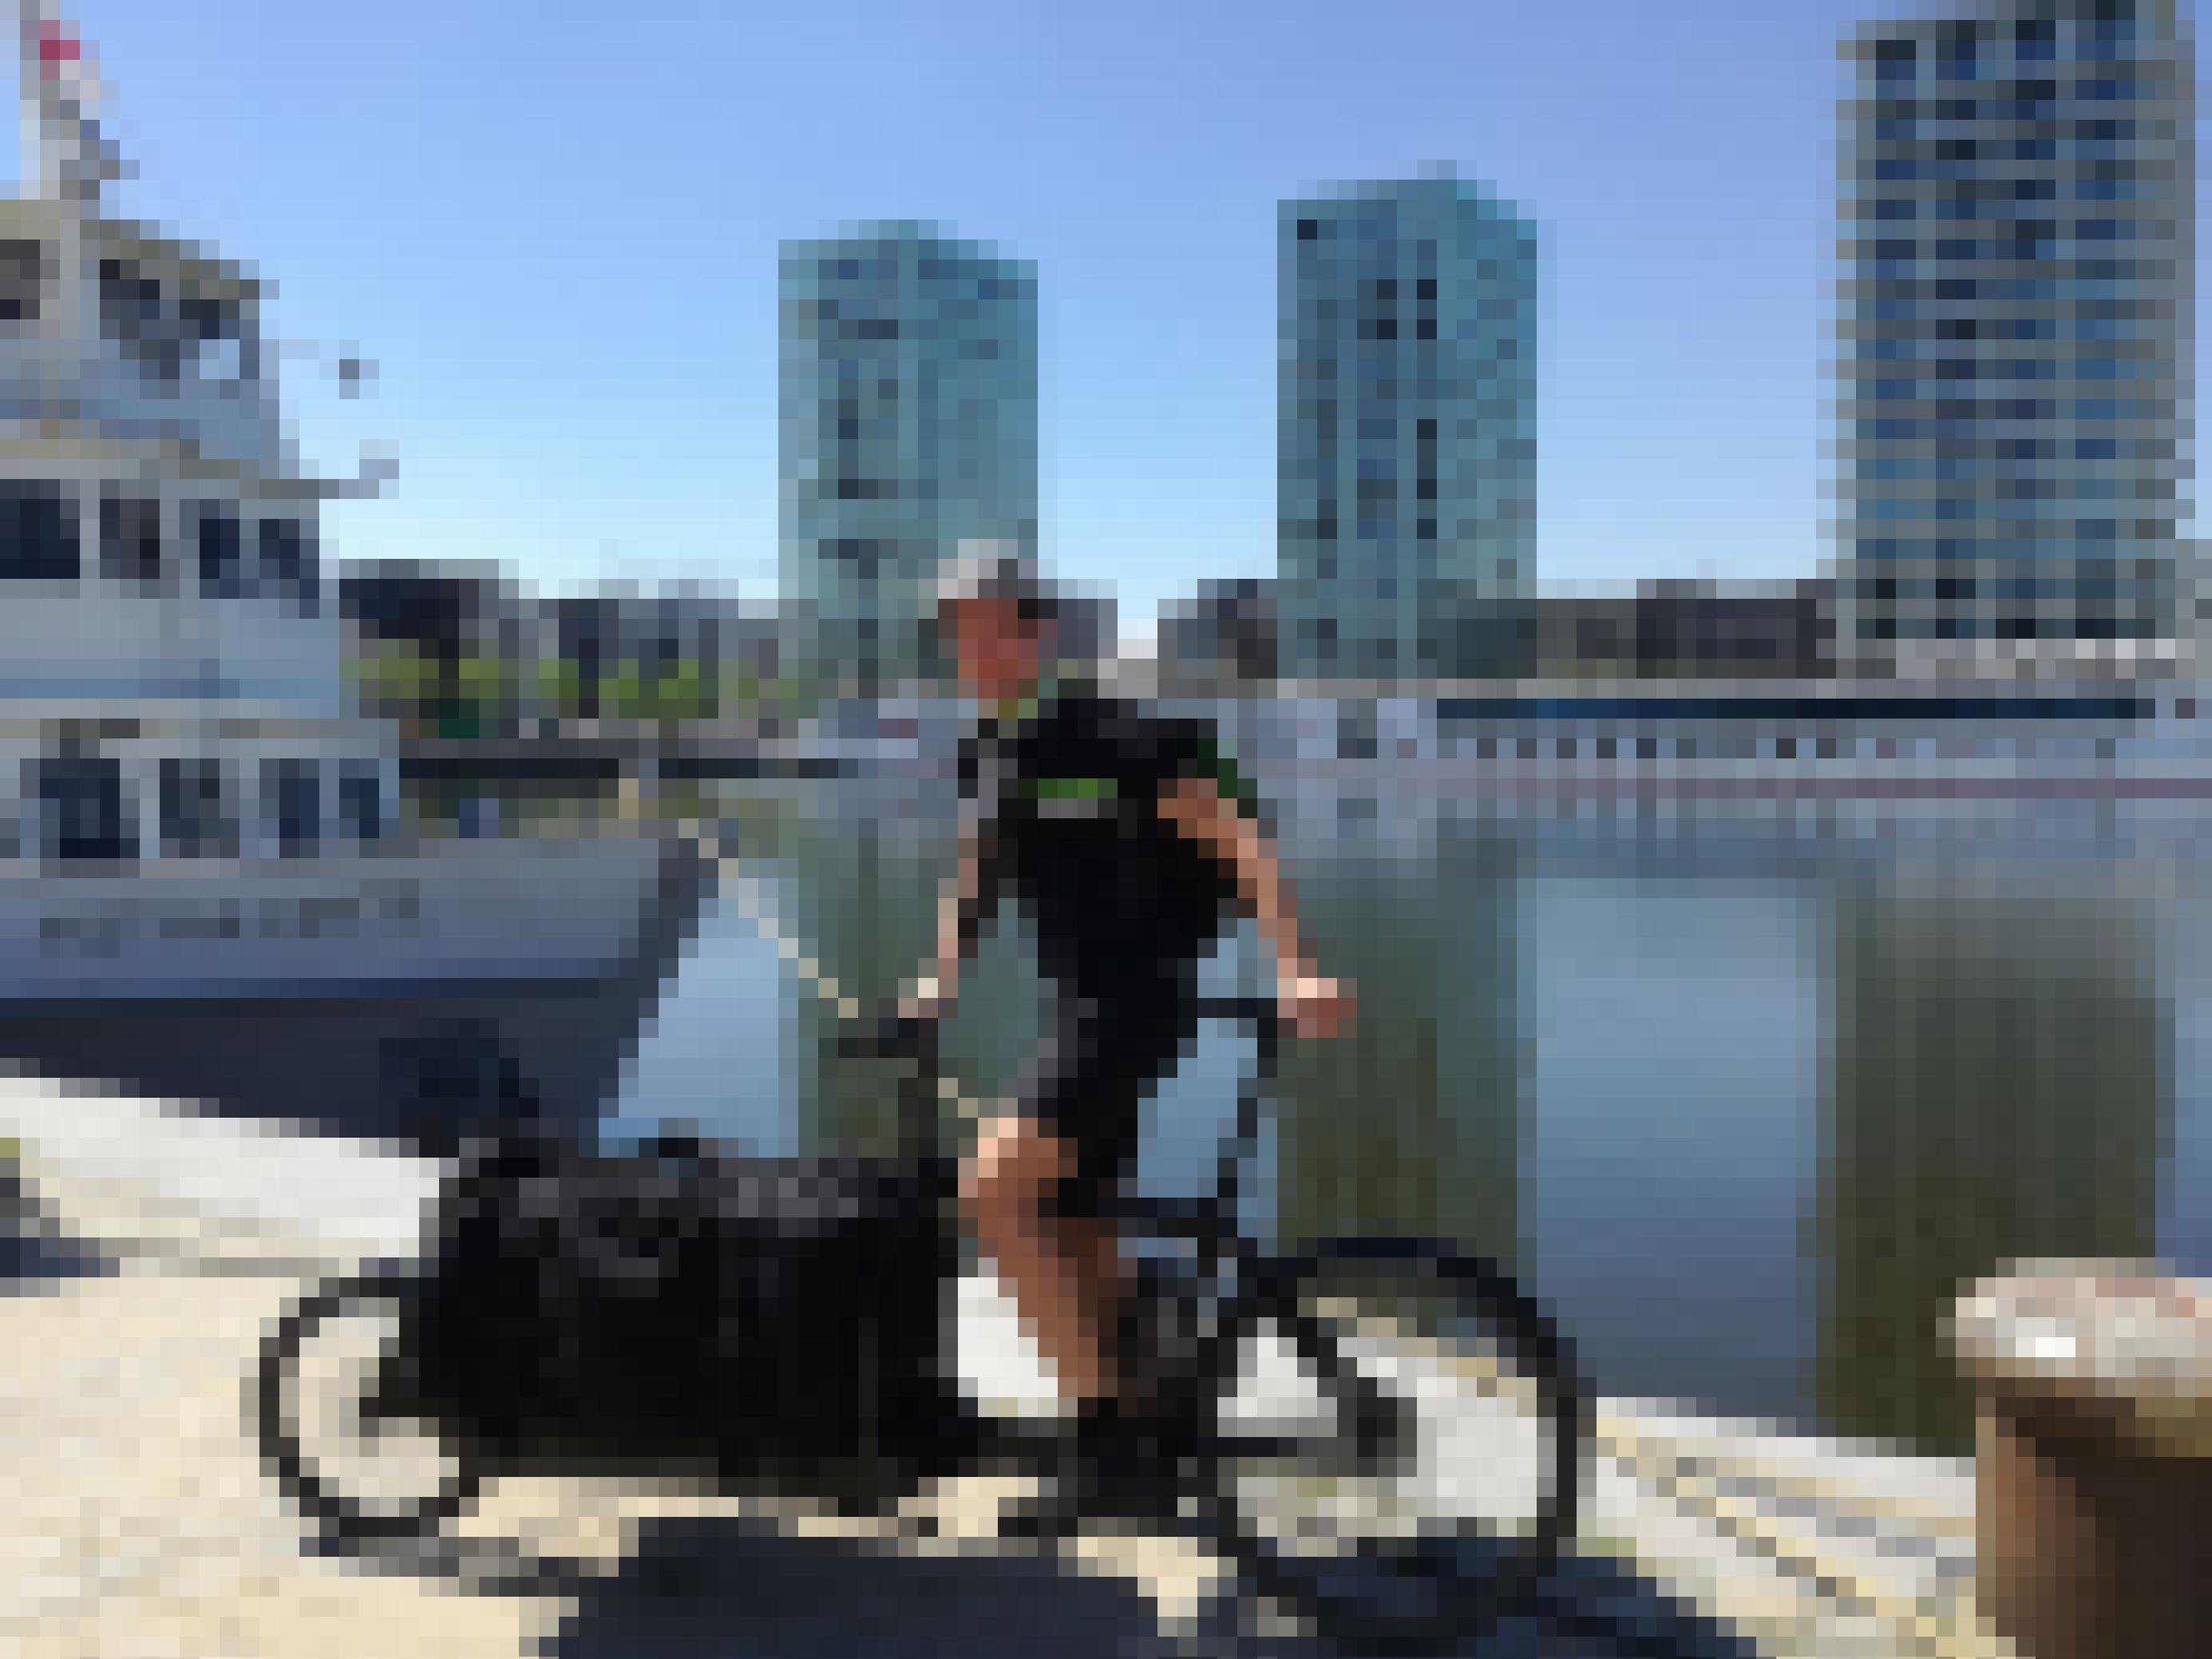 Ein sportlicher Radfahrer in schwarzer Kleidung auf steht mit seinem Lastenrad vor einem Gewässer in der Stadt.